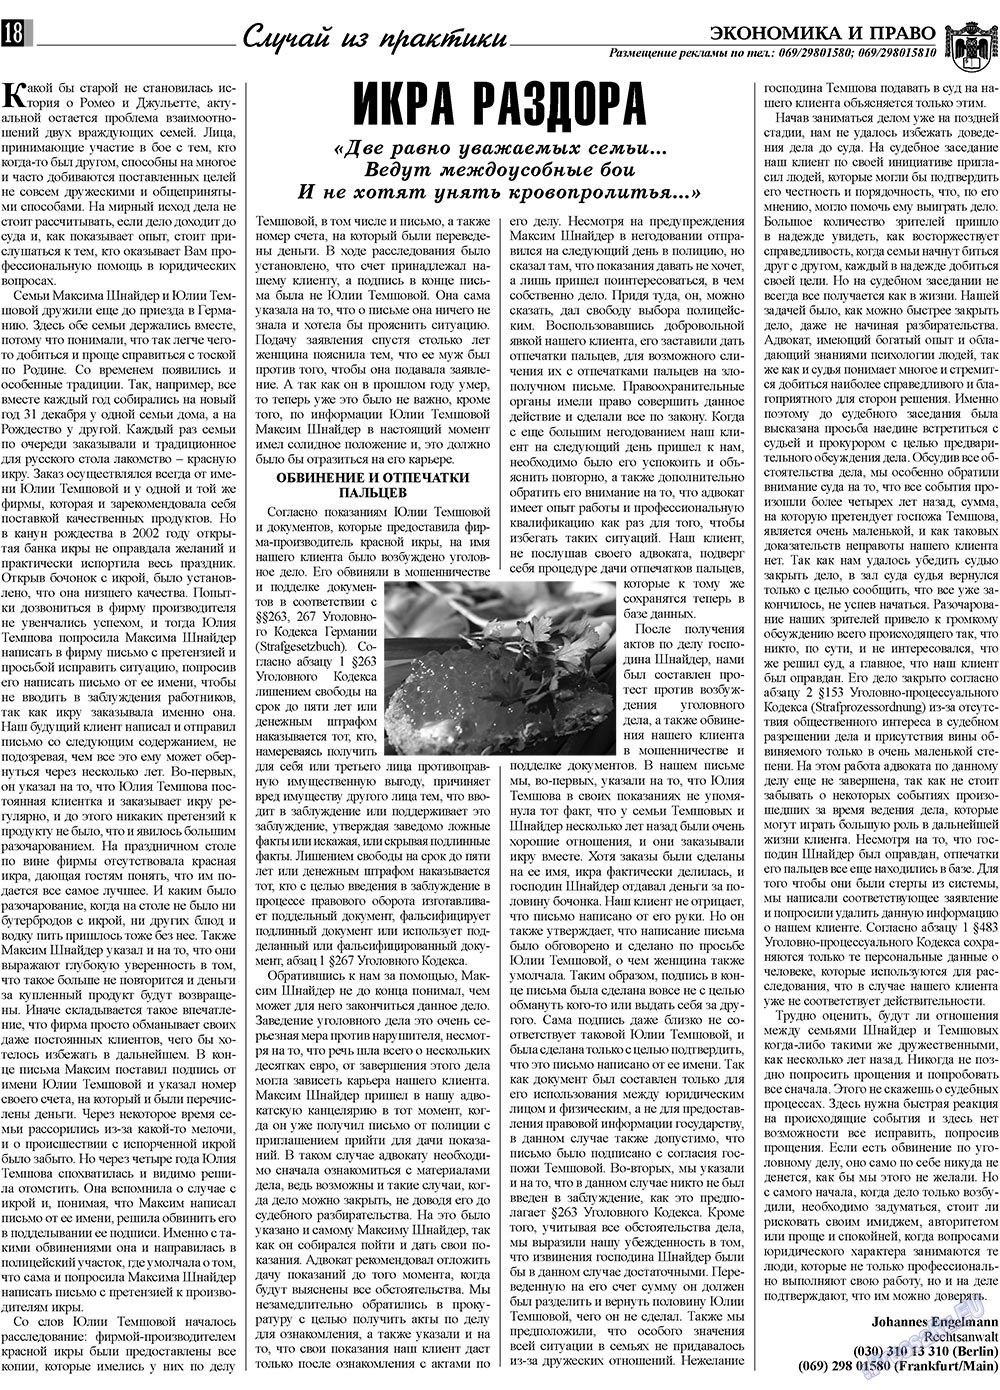 Экономика и право, газета. 2009 №6 стр.18